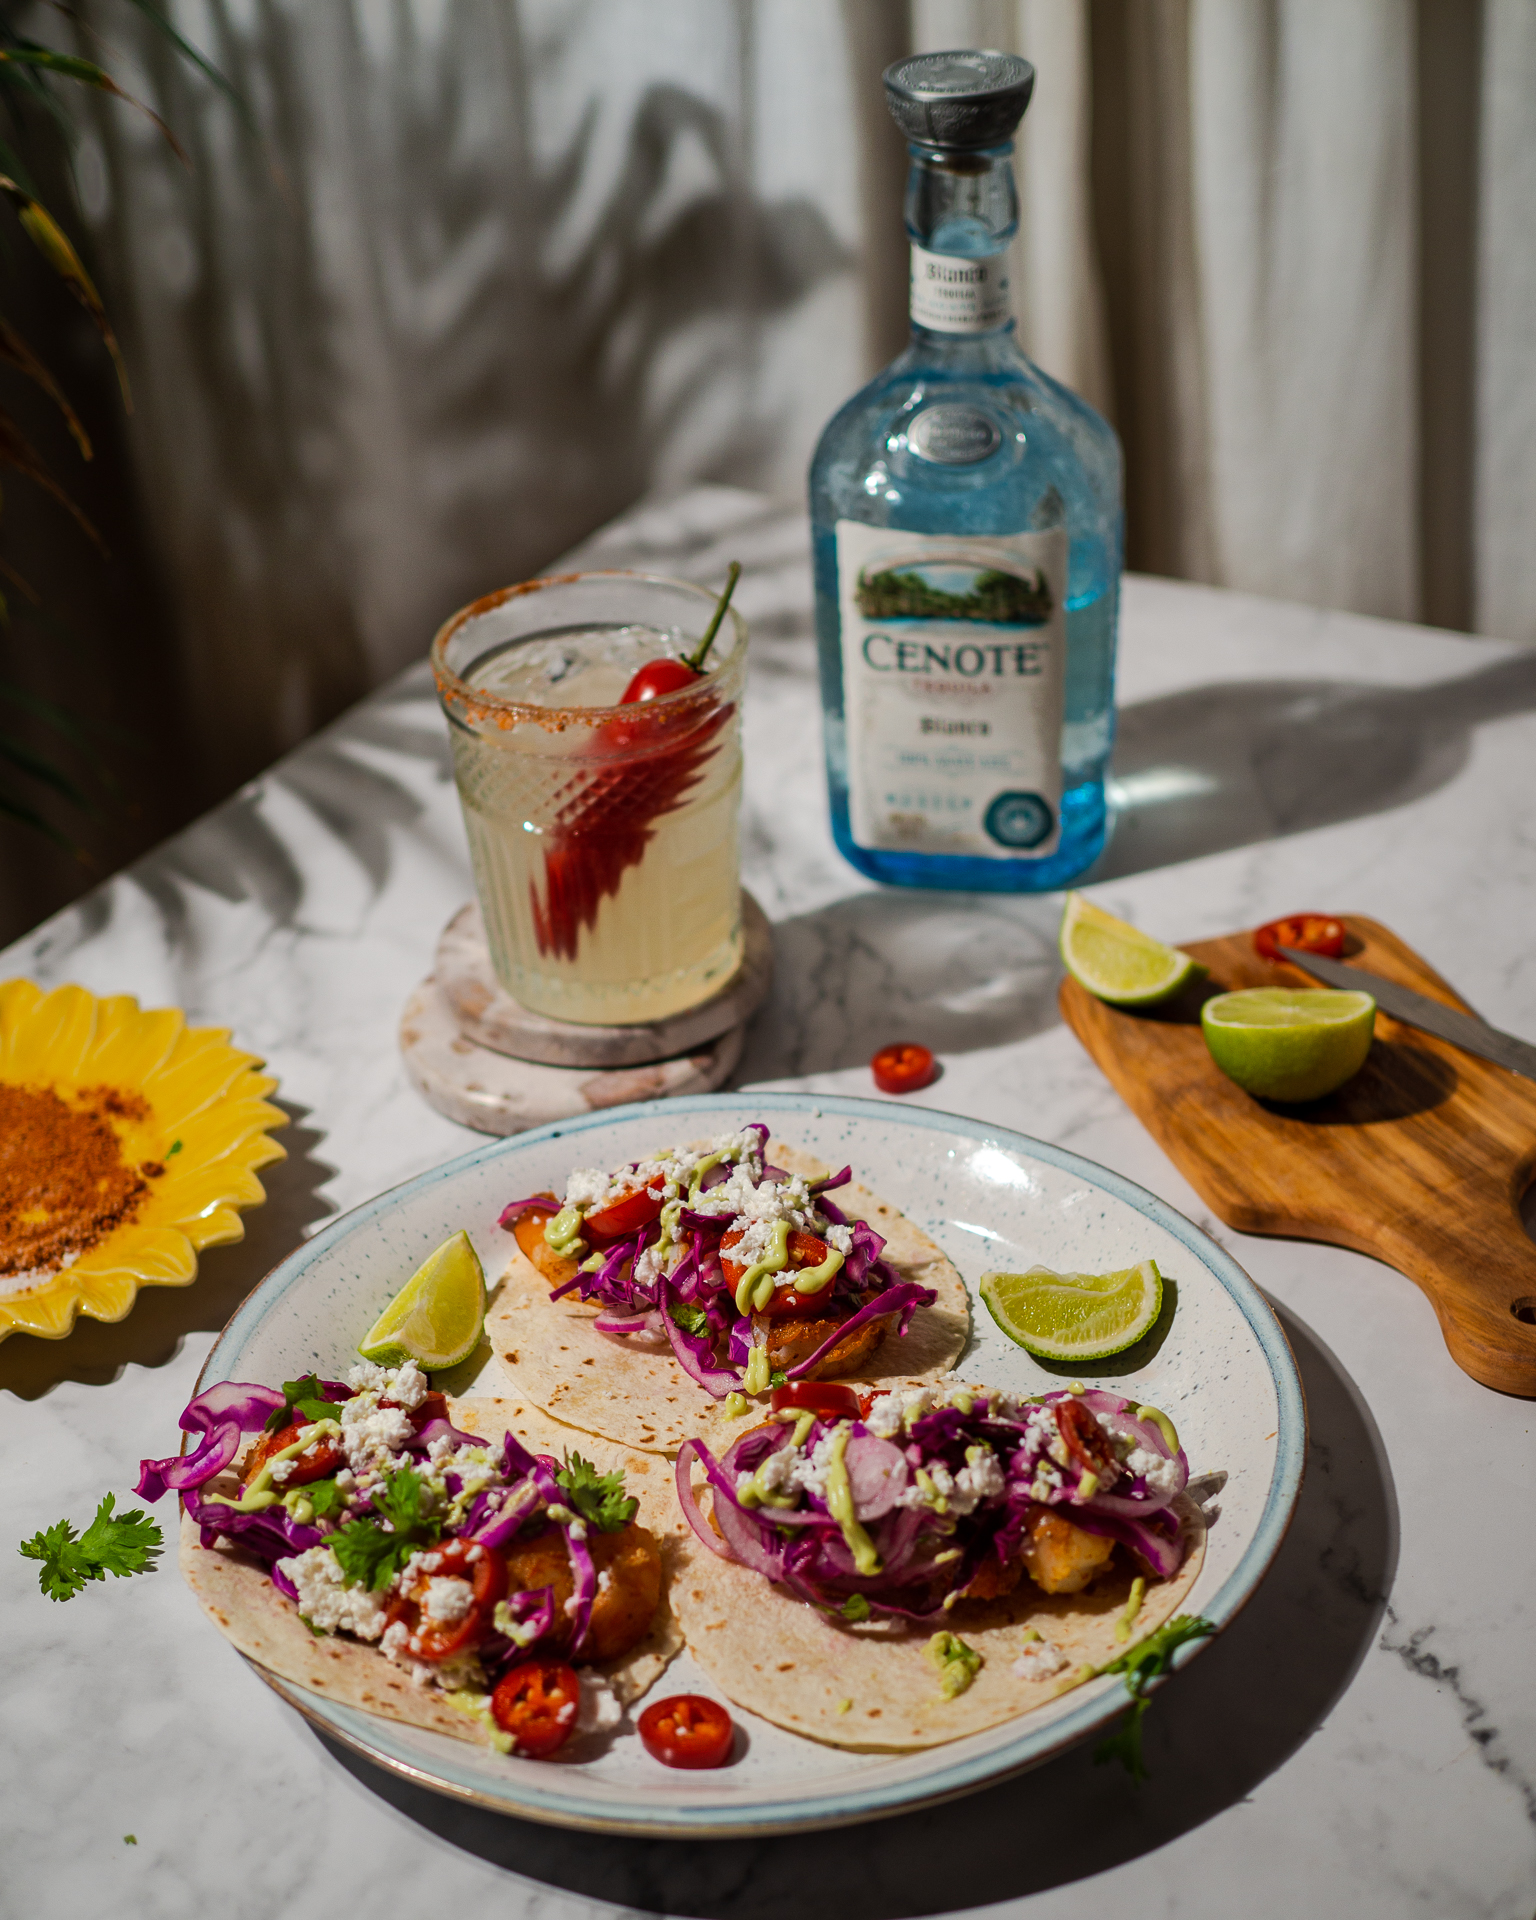 Γαρίδες σβησμένες με tequila μέσα σε μαλακές τορτίγιες με εθιστική σως αβοκάντο-γιαούρτι, παρέα με δροσερές margarita. Και η καλύτερη fiesta γίνεται σπίτι σου. 